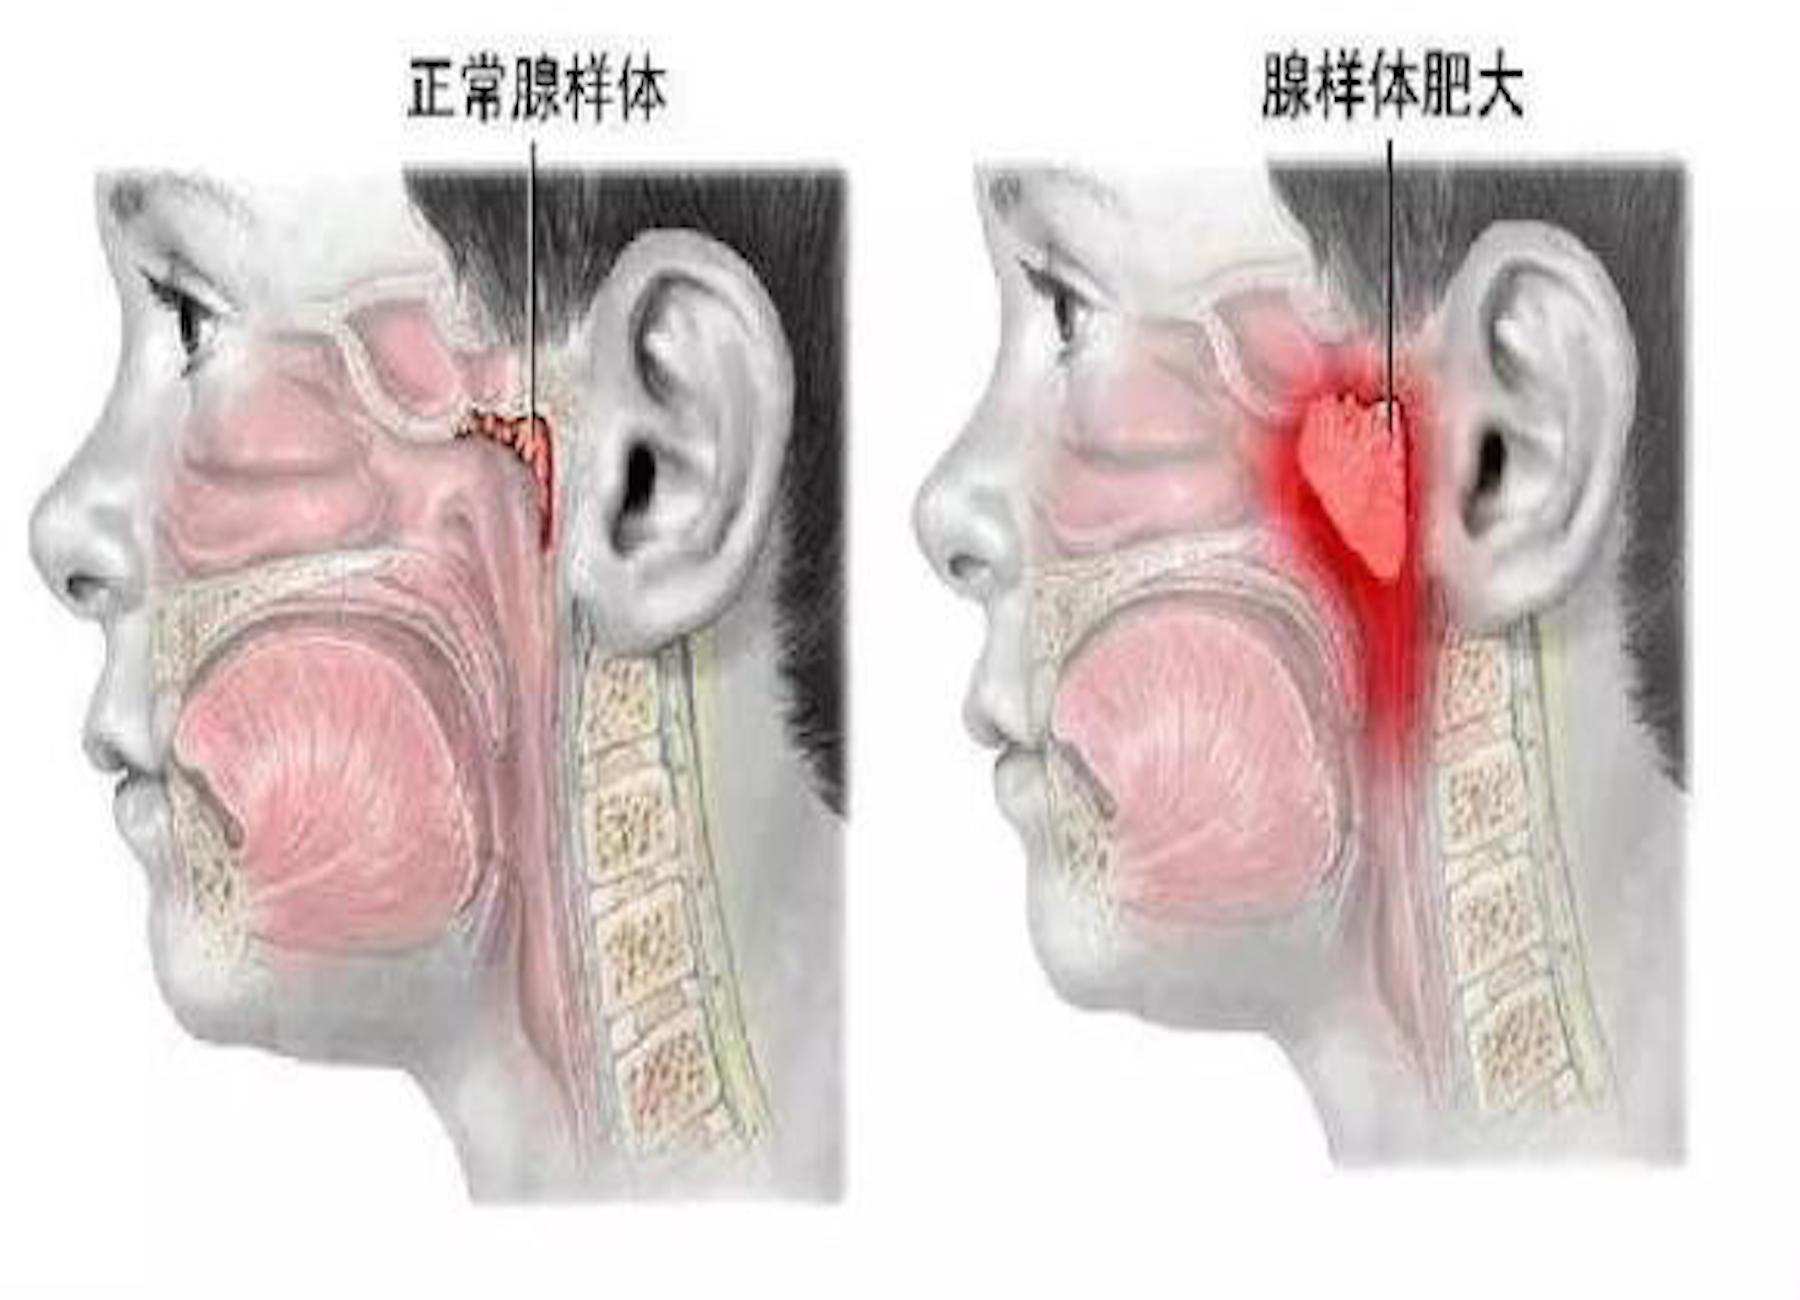 腺样体也叫咽扁桃体或增殖体,位于鼻咽部顶部与咽后壁处,属于淋巴组织